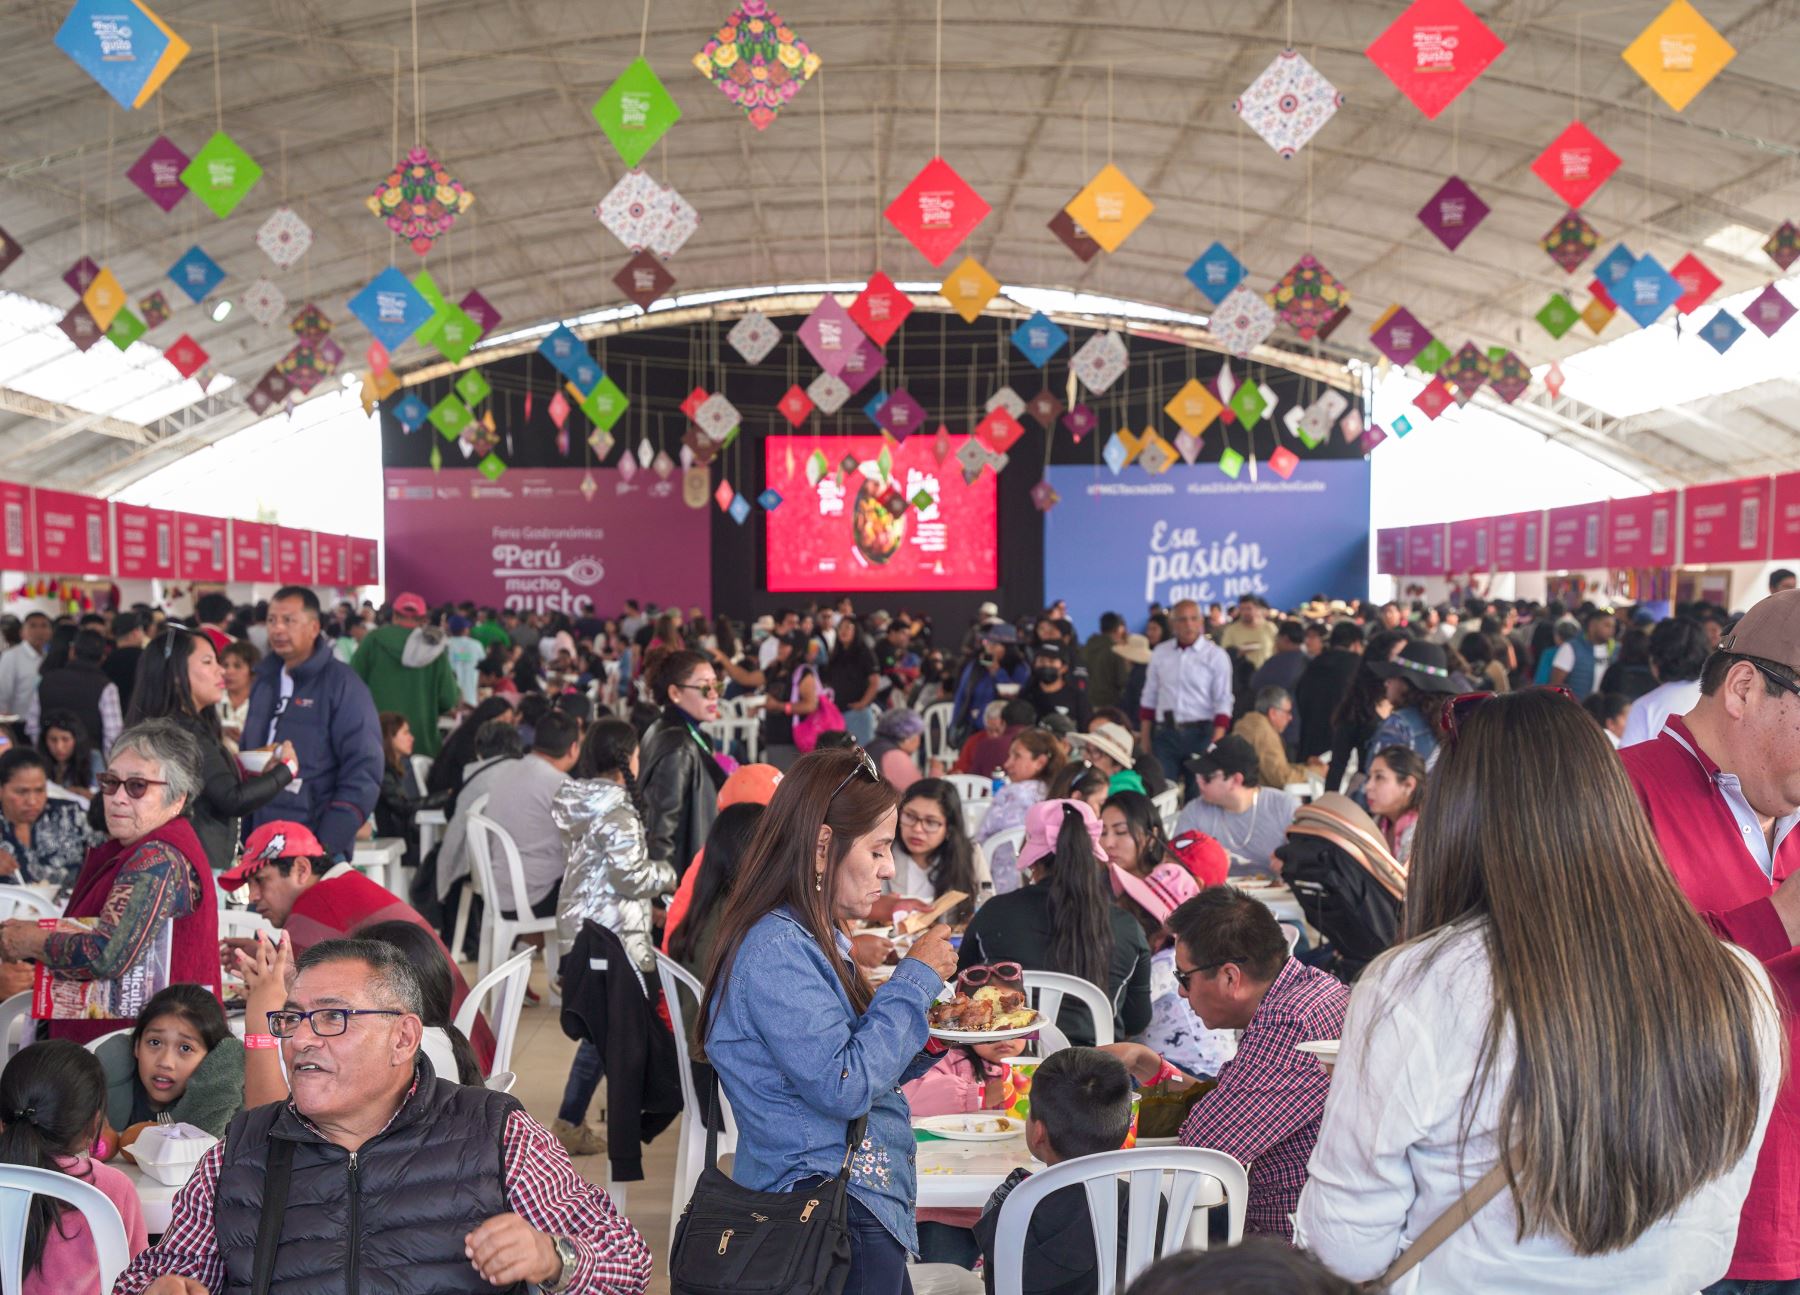 La edición Bicentenario de la feria gastronómica Perú Mucho Gusto celebrada en Tacna fue un éxito total al convocar a más de 85,000 personas durante los tres días del certamen. ANDINA/Difusión